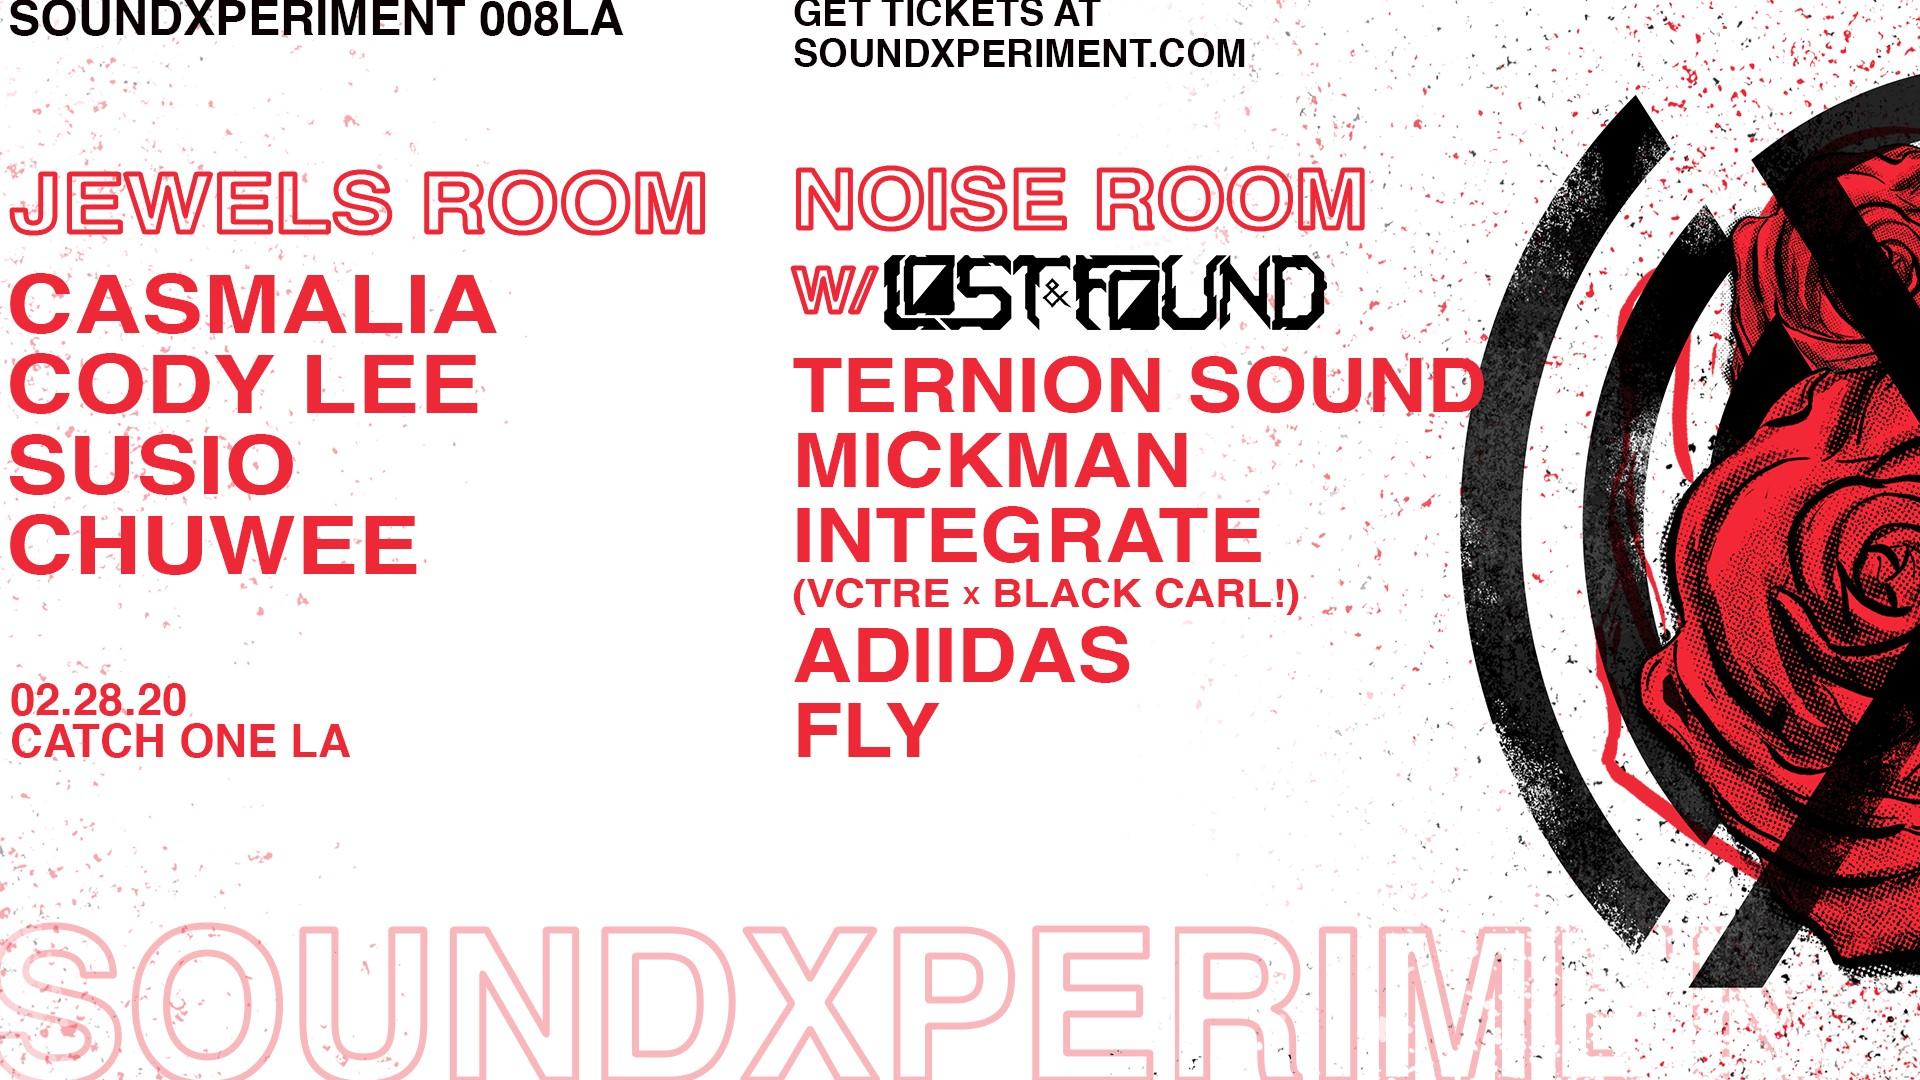 soundXperiment 008LA x Lost & Found | Ternion Sound